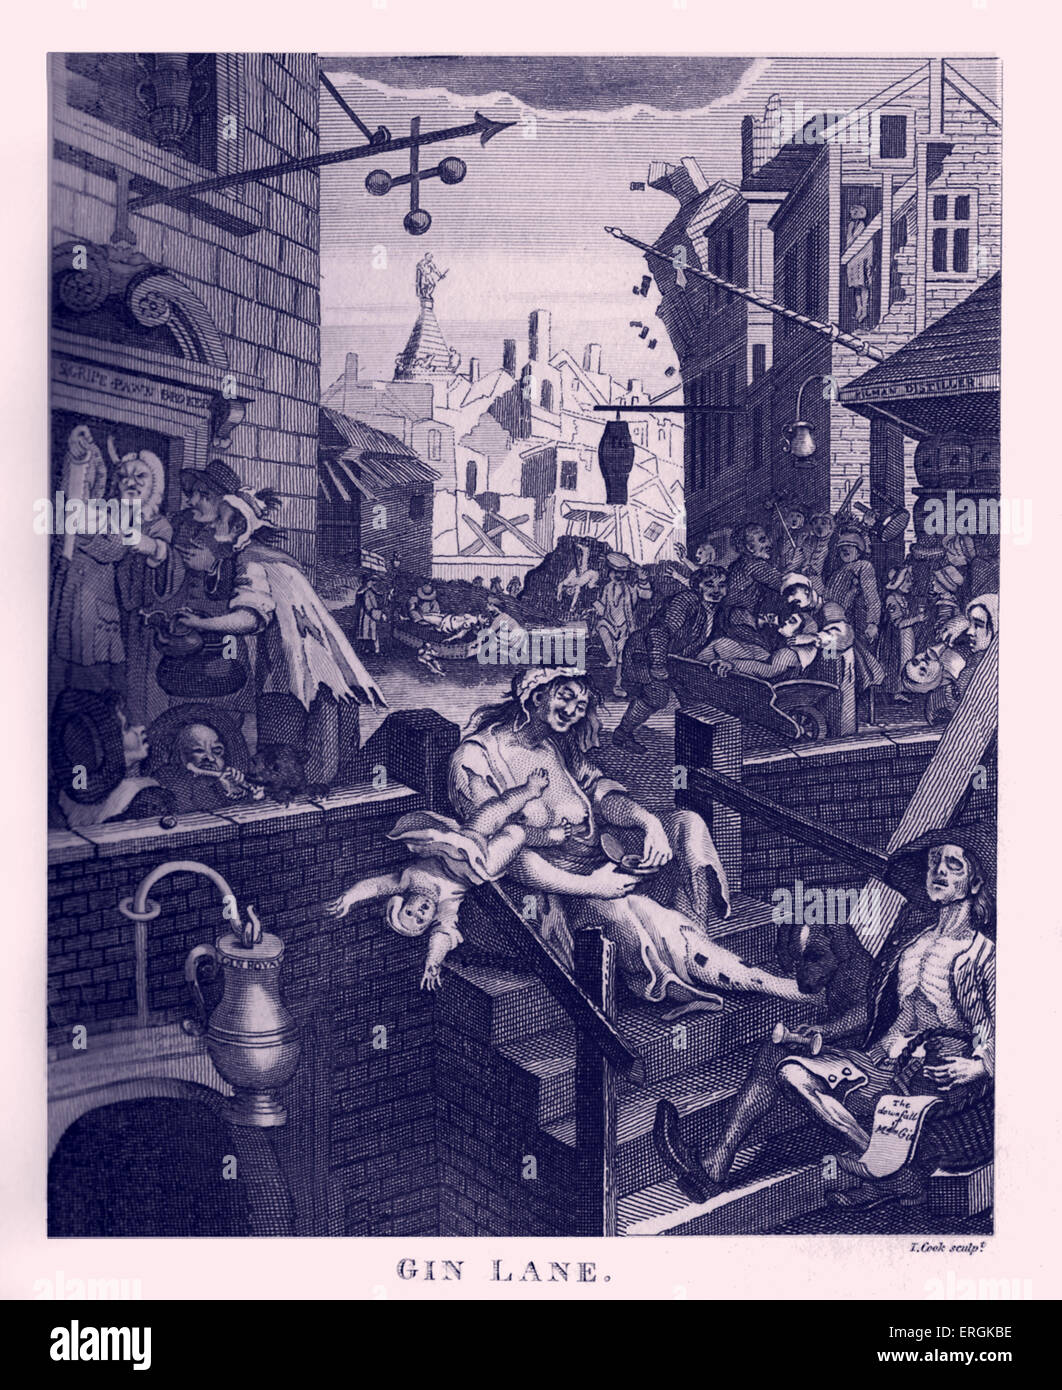 Il Gin Lane da William Hogarth, 1751. Accoppiato con la birra Street, queste incisioni supportato il Gin Act del 1751.incisi da Thomas Foto Stock